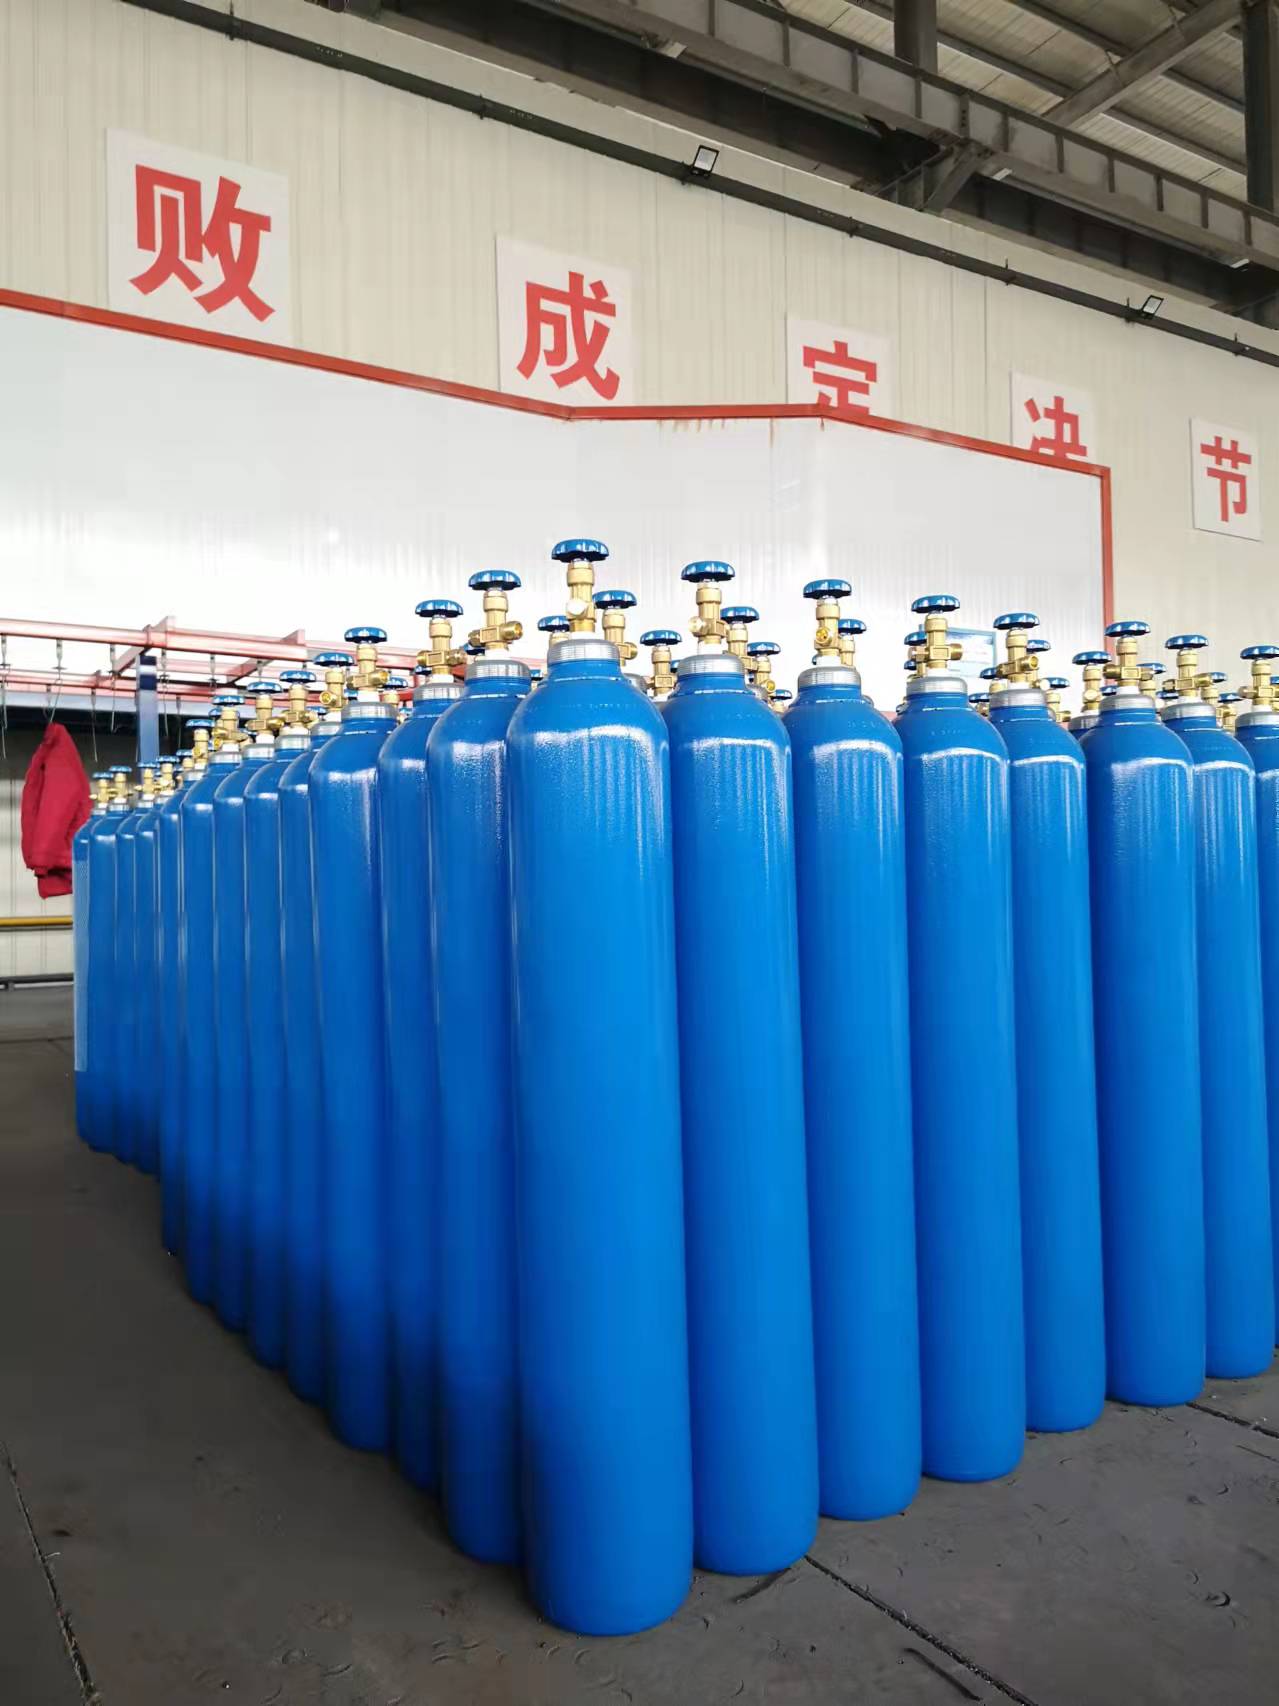 江苏气瓶公司 自主无缝气瓶 山东广承压力容器有限公司